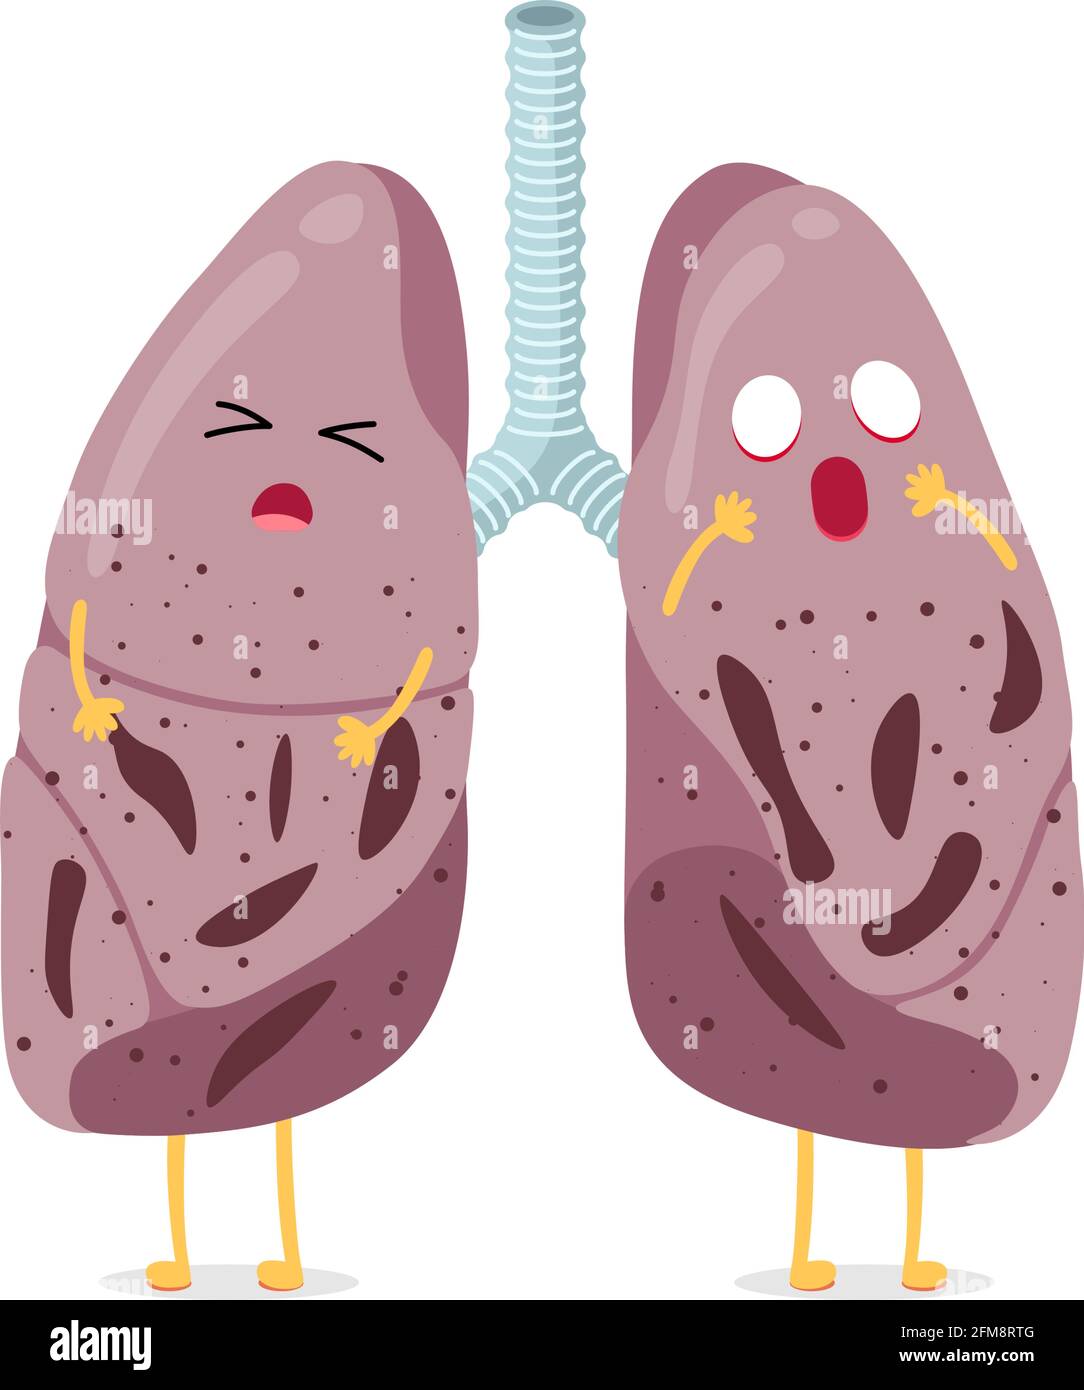 Krank ungesunde Cartoon-Lungen Charakter Tuberkulose-Virus-Krankheit. Die inneren Organtuberkelbazillen des menschlichen Atmungssystems oder eine Lungenentzündung wurden geschlagen. Medizinische anatomische Schäden Vektor-Illusrtation Stock Vektor